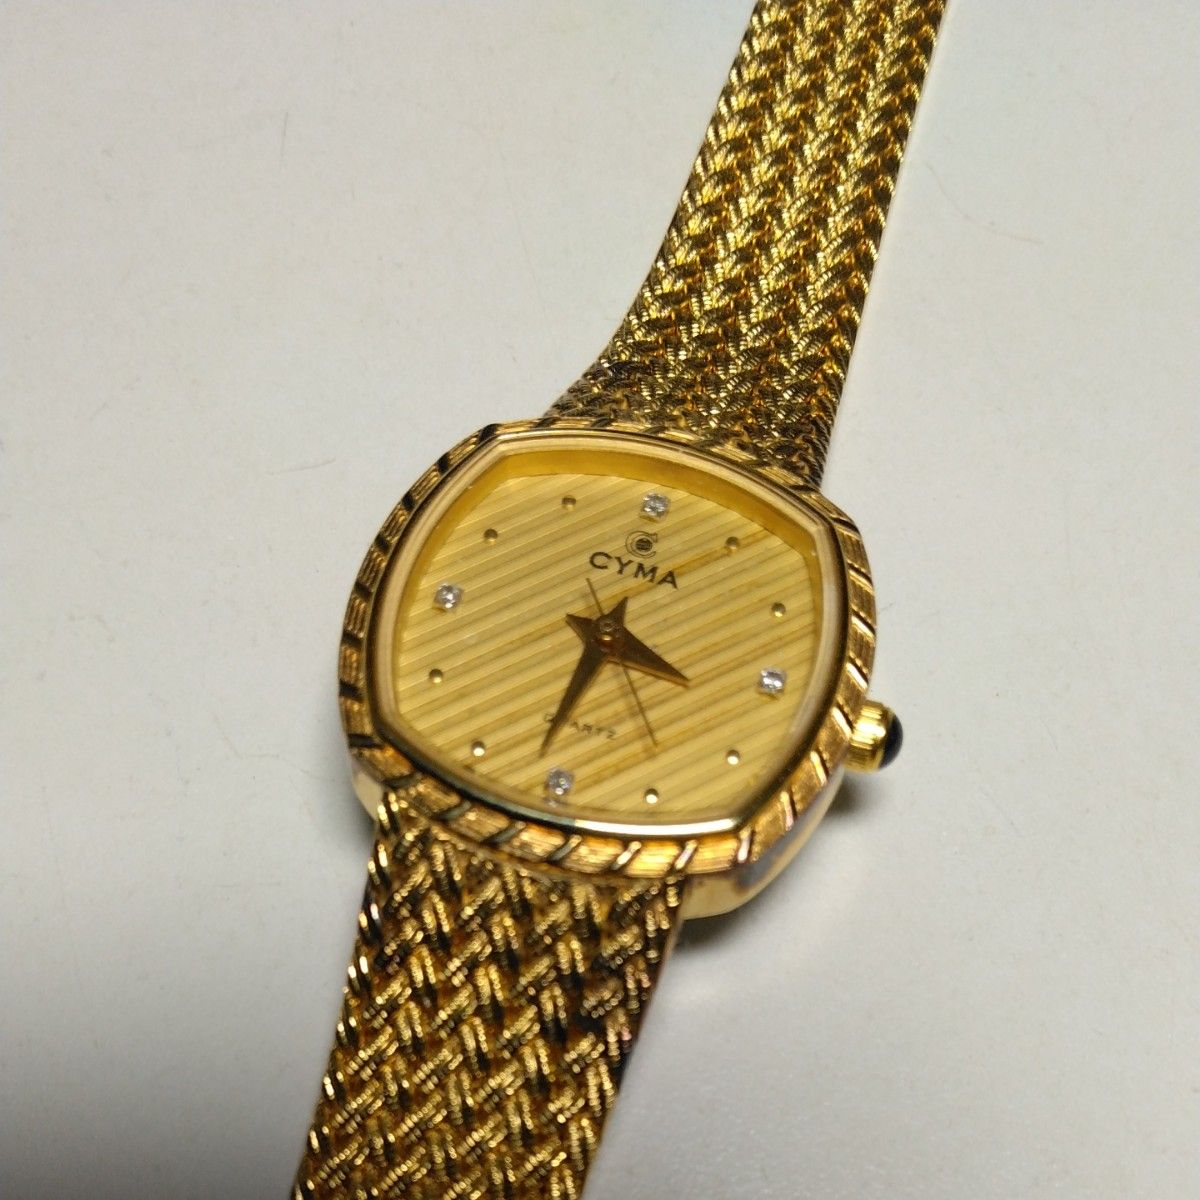 CYMA シーマ ダイヤモンド4Pインデックス ゴールドカラー レディース腕時計 616SP